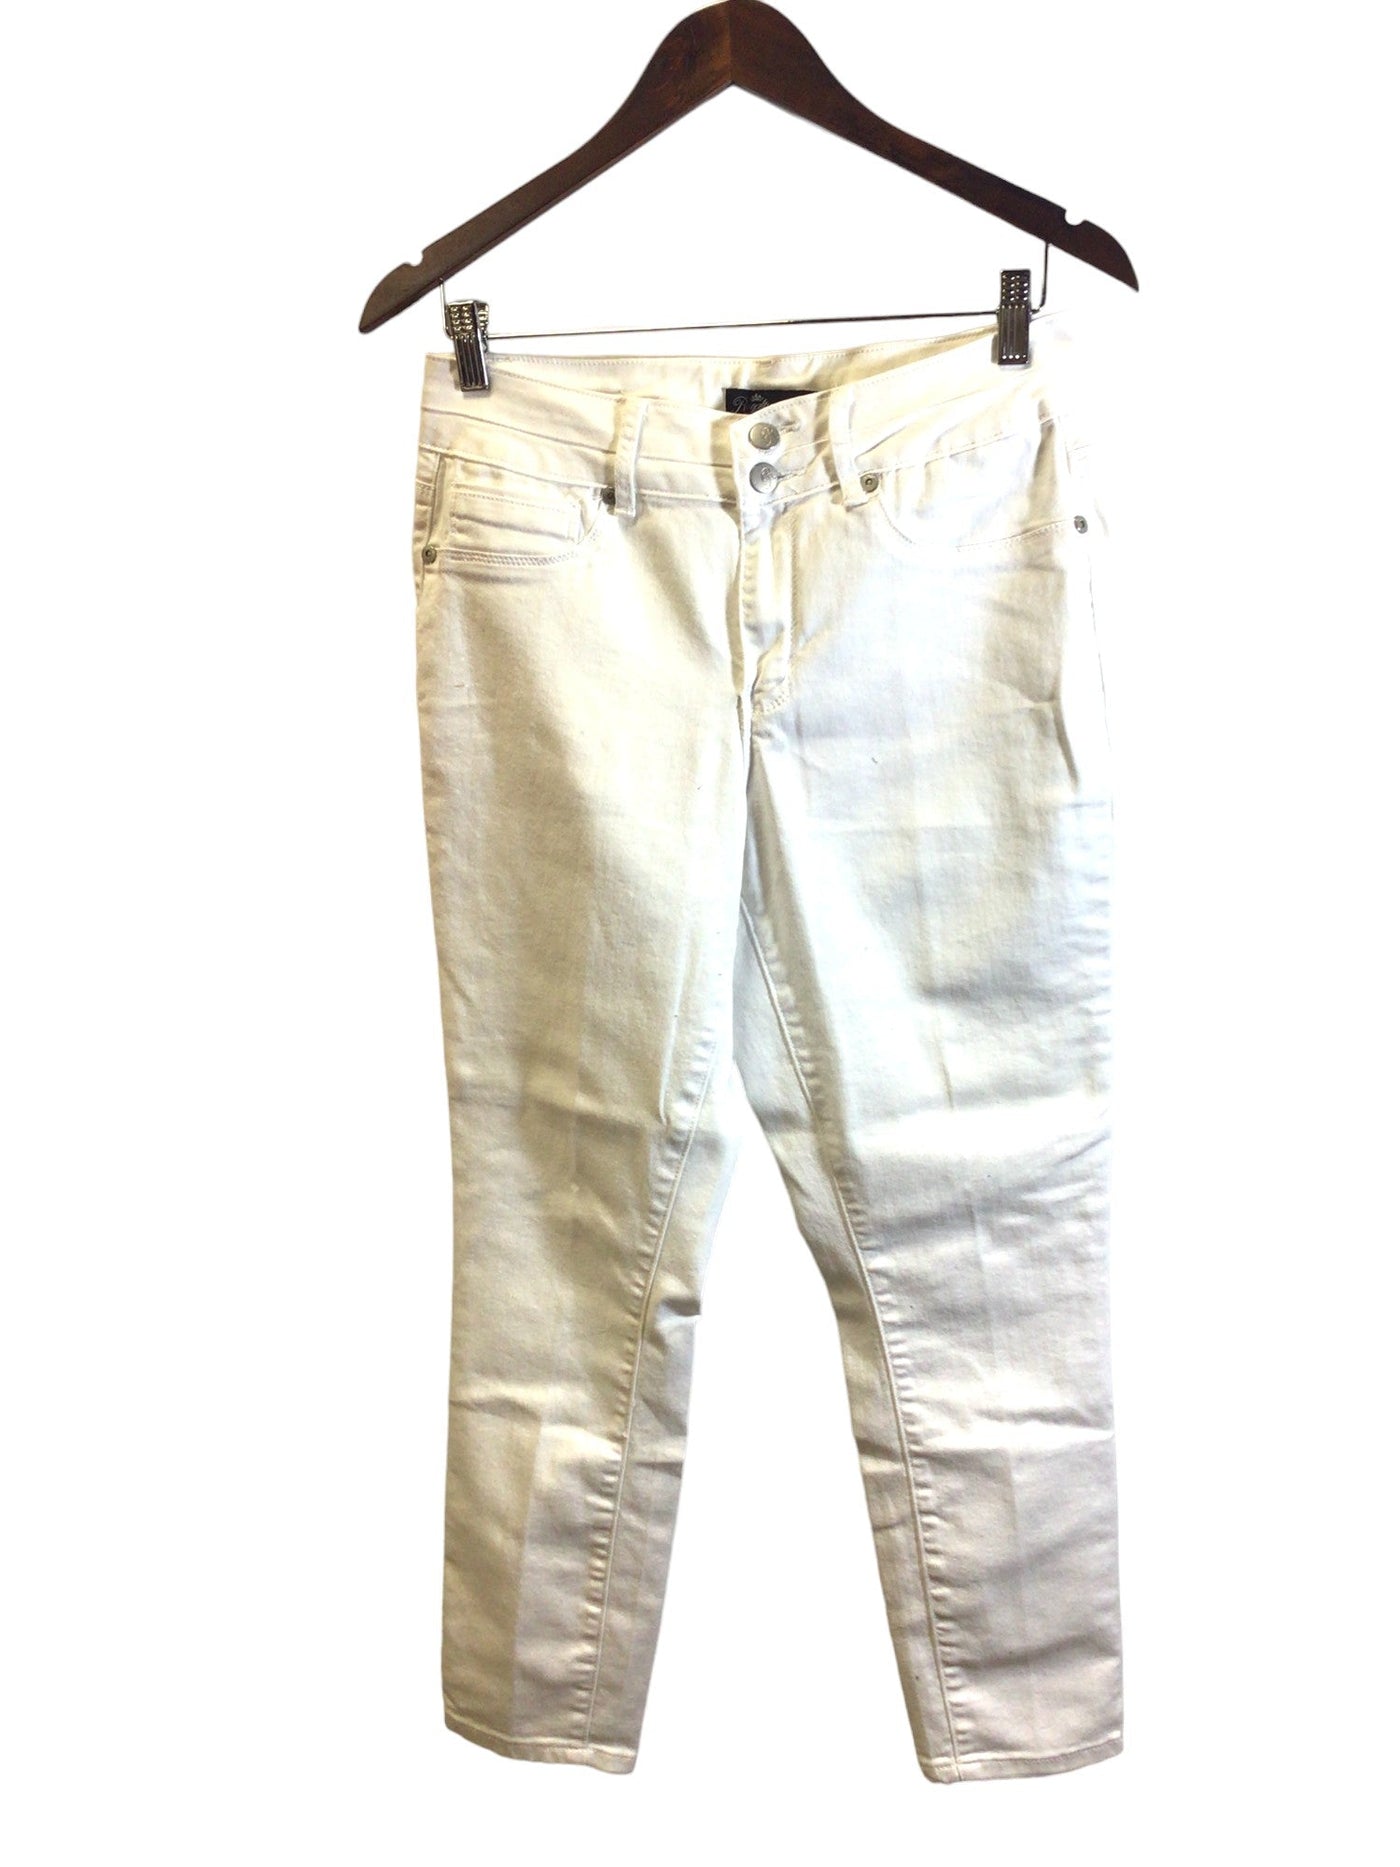 ROYALTY FOR ME Women Straight-Legged Jeans Regular fit in White - Size 8 | 15 $ KOOP